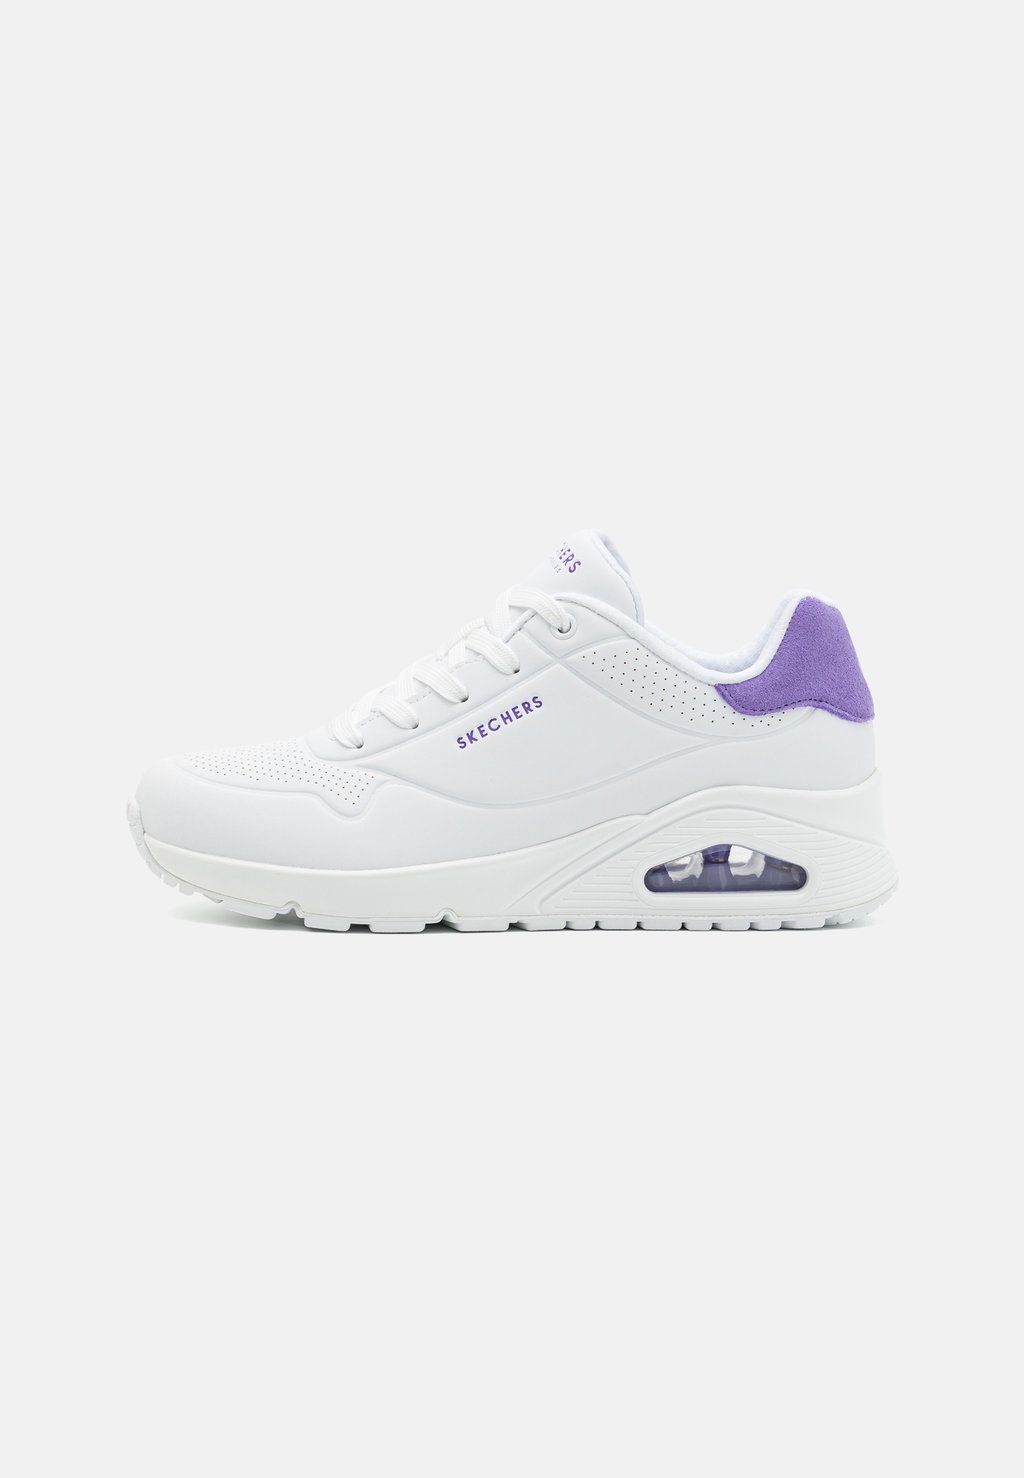 Низкие кроссовки Uno Skechers Sport, цвет white/purple кроссовки низкие koopa skechers sport цвет white navy